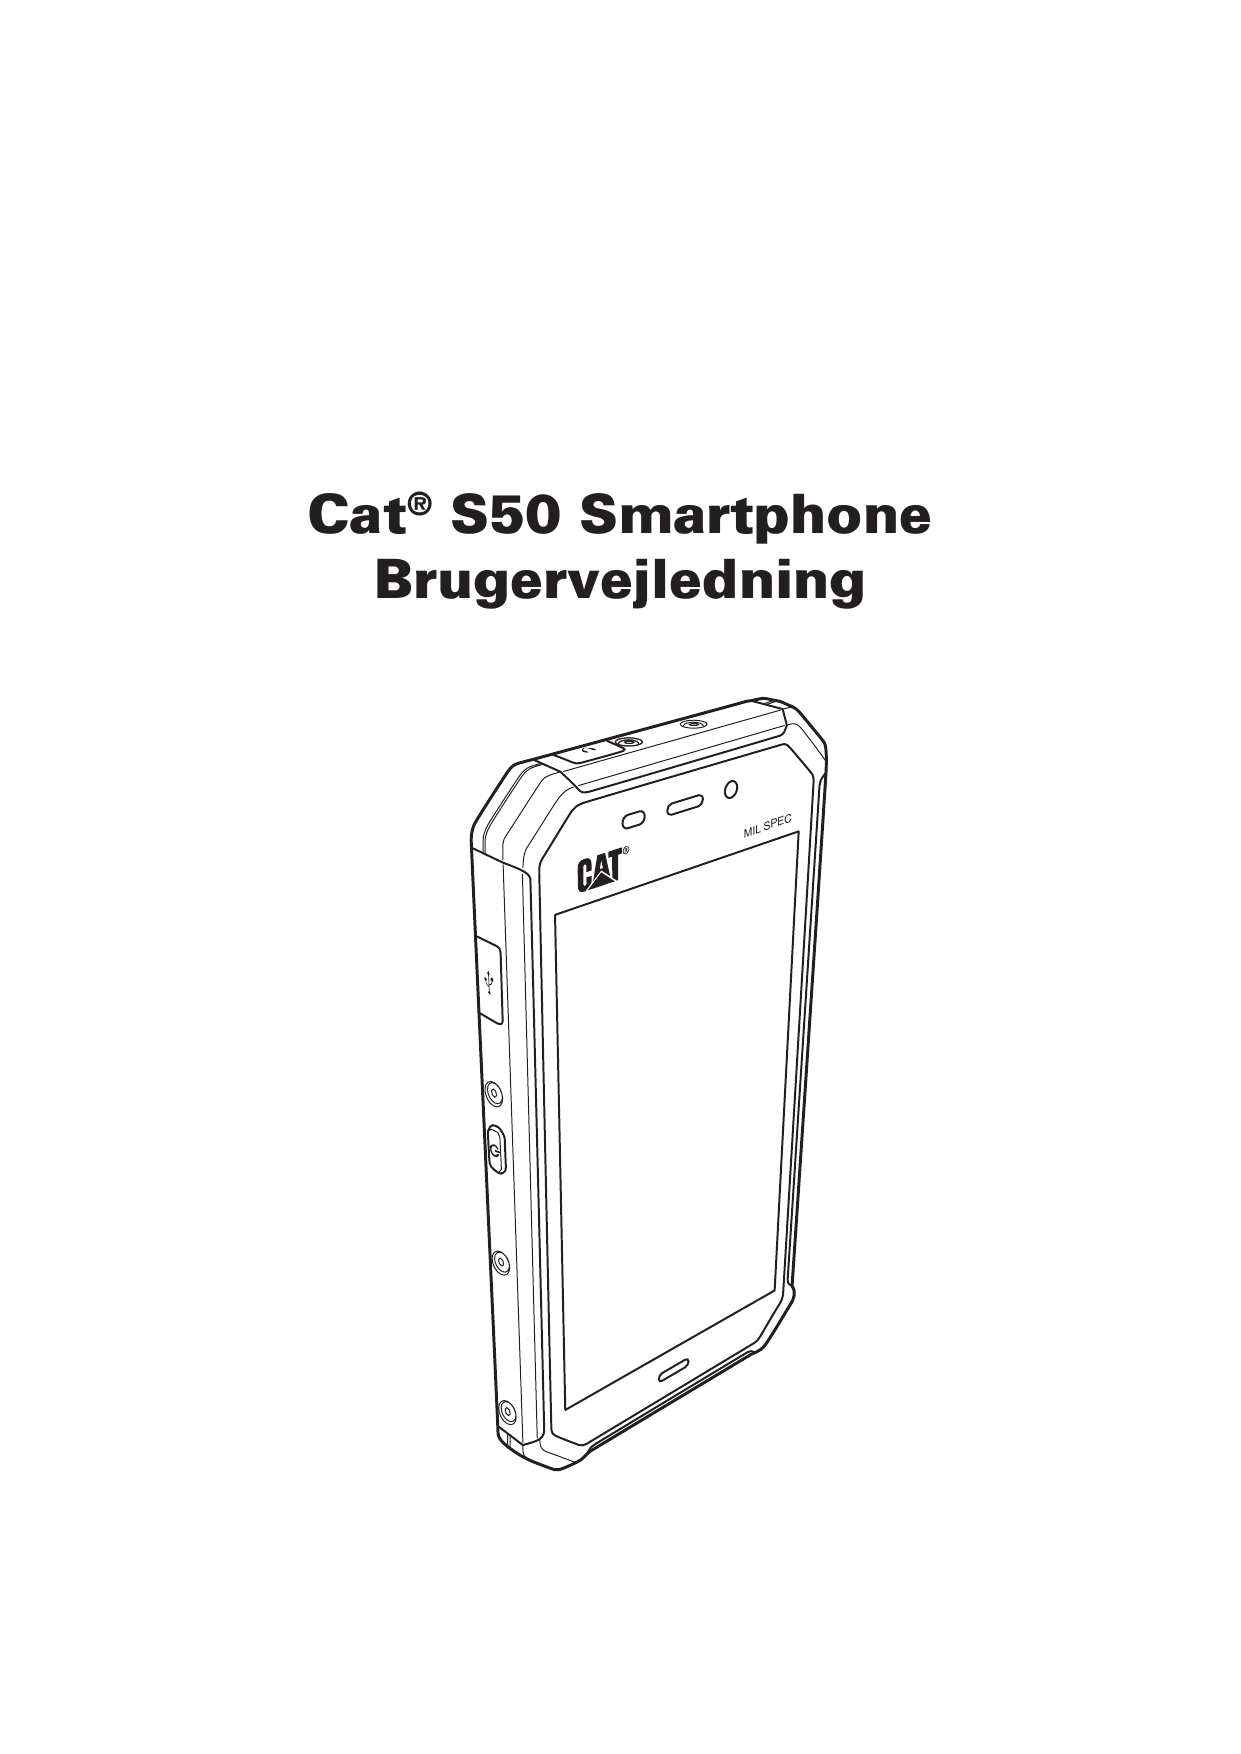 Cat® S50 SmartphoneBrugervejledningMILCSPE